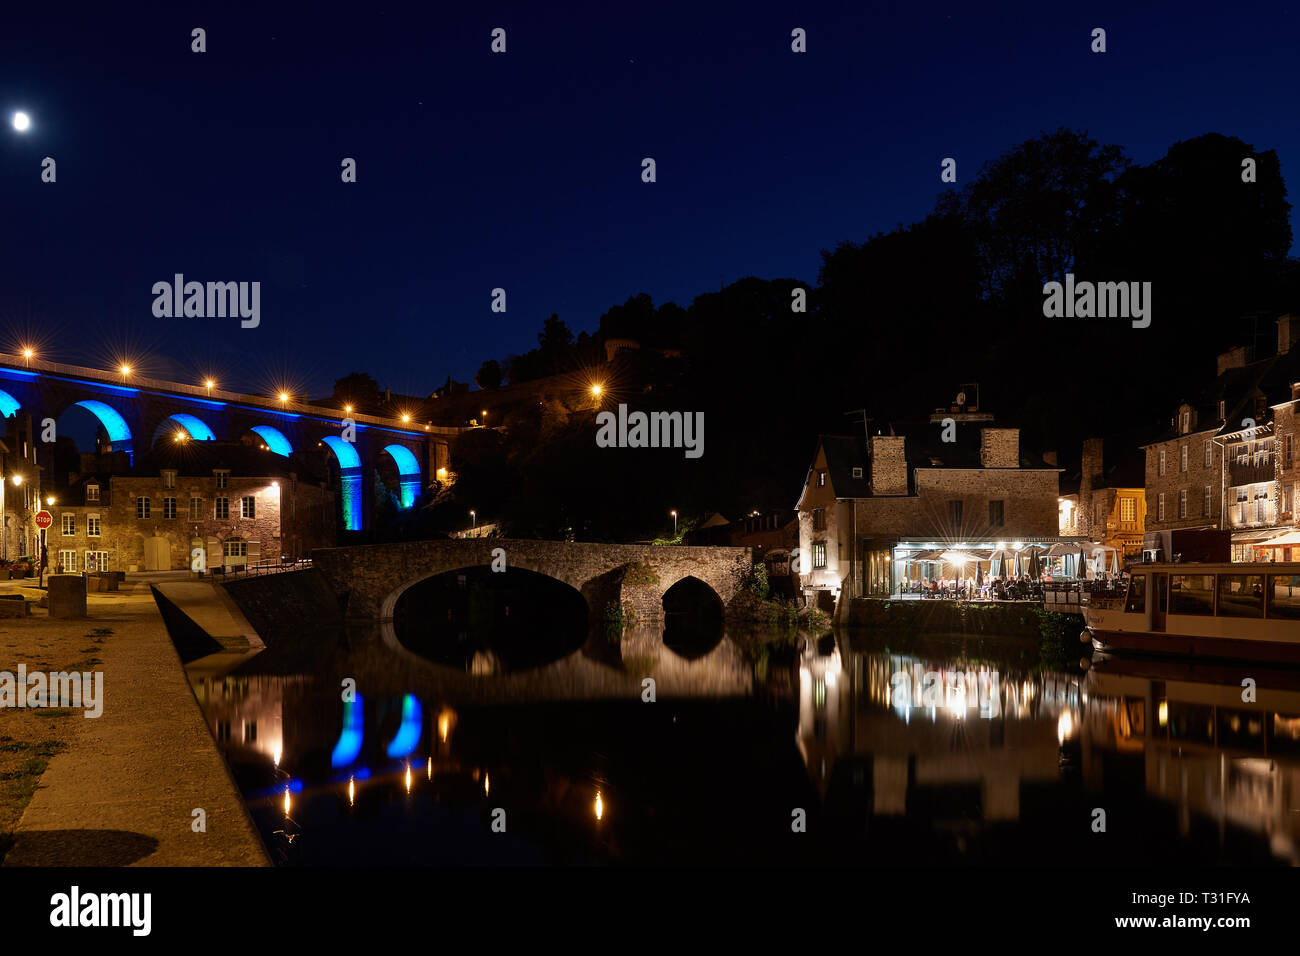 Malerische Viadukt, alte Steinhäuser und Restaurants von Dinan Port in das Wasser in der Nacht wider. Schöne Beleuchtung unter einem Sternenhimmel. Stockfoto